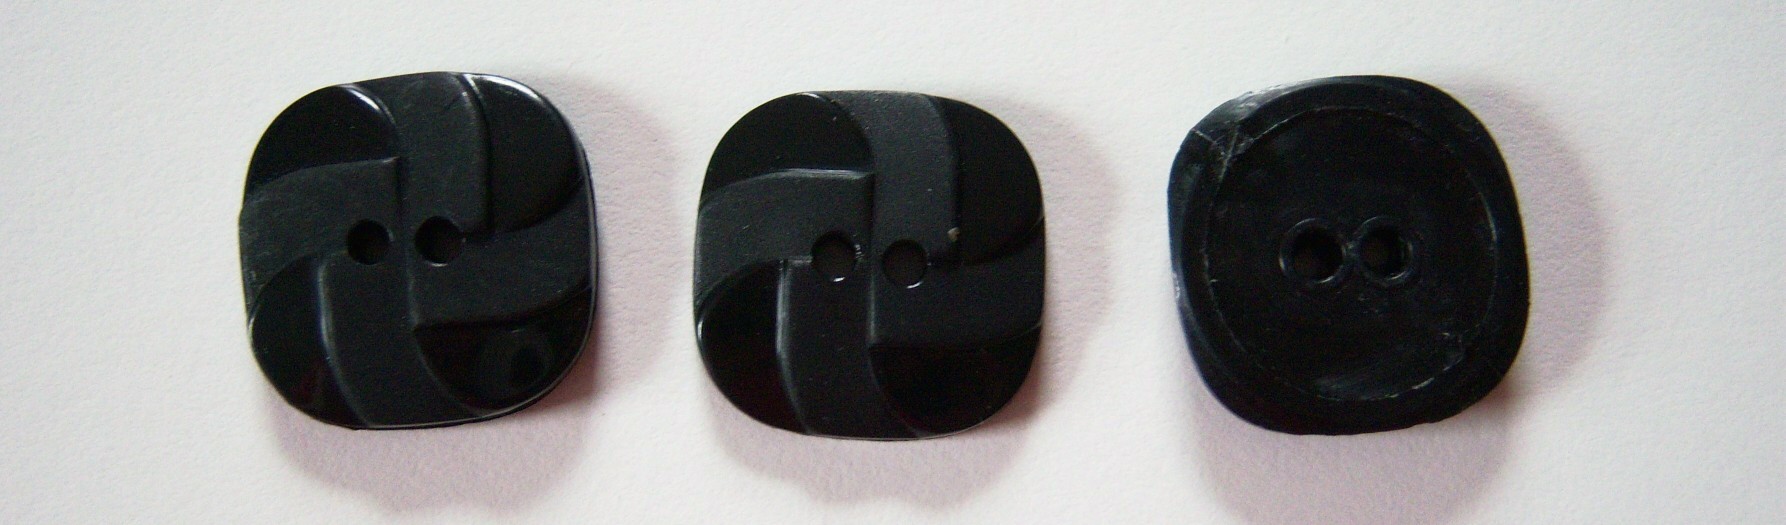 JHB Shiny Black 7/8" Square Button